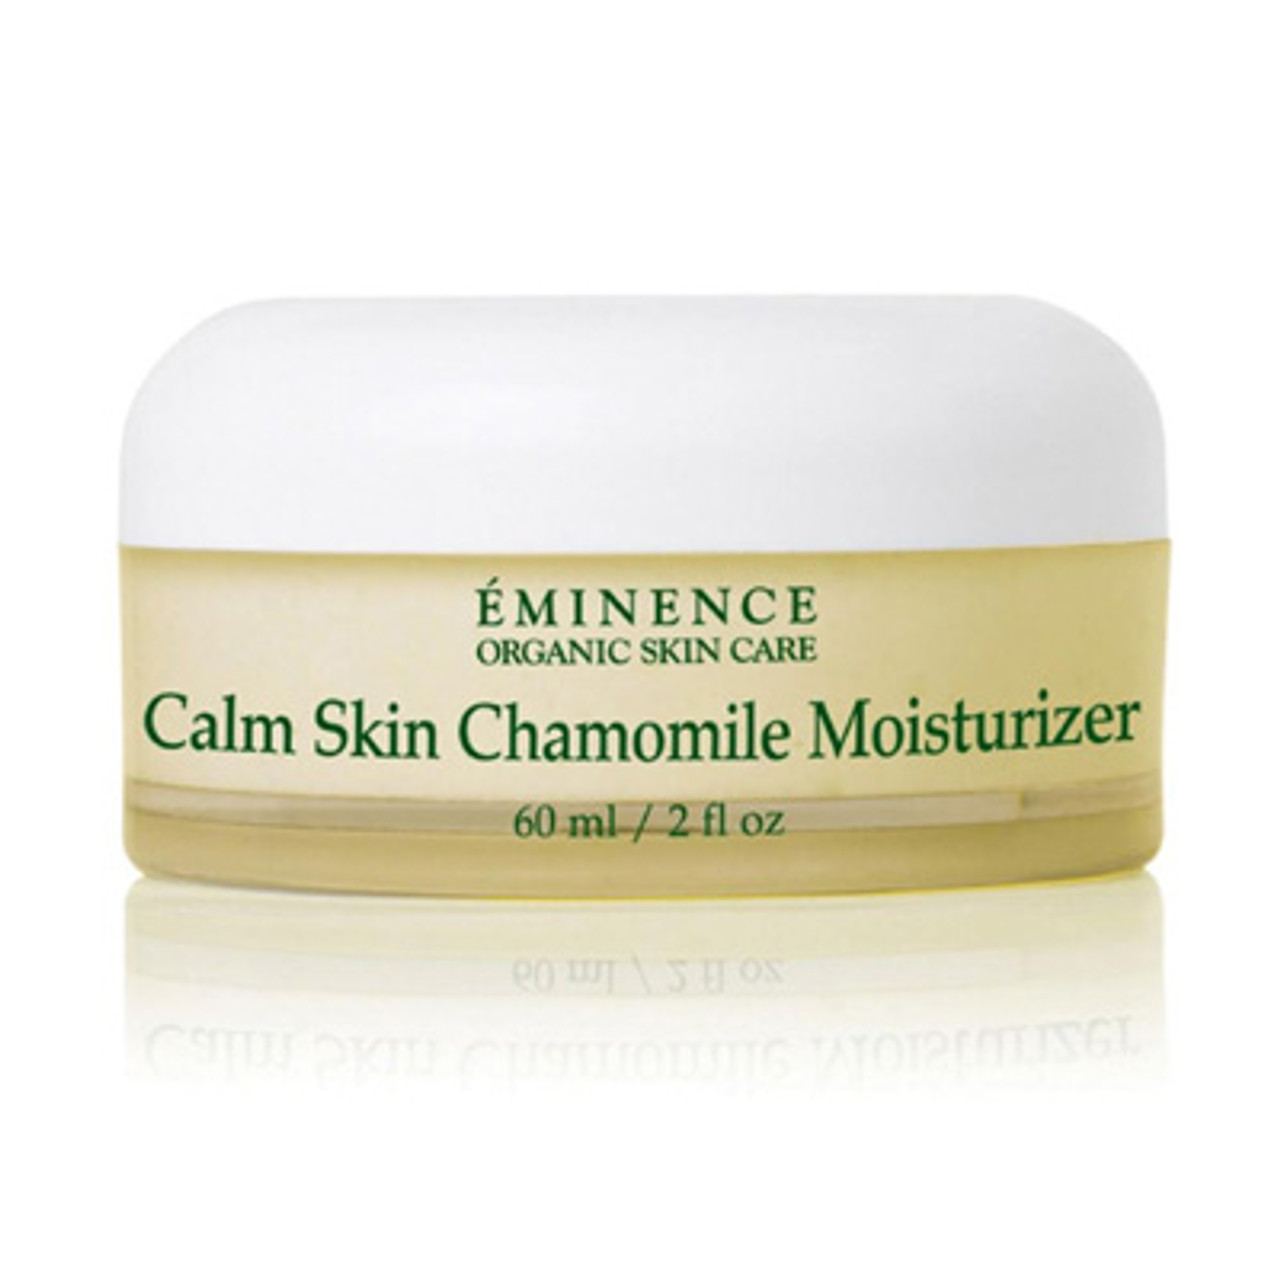 Eminence Calm Skin Chamomile Moisturizer - 2 oz